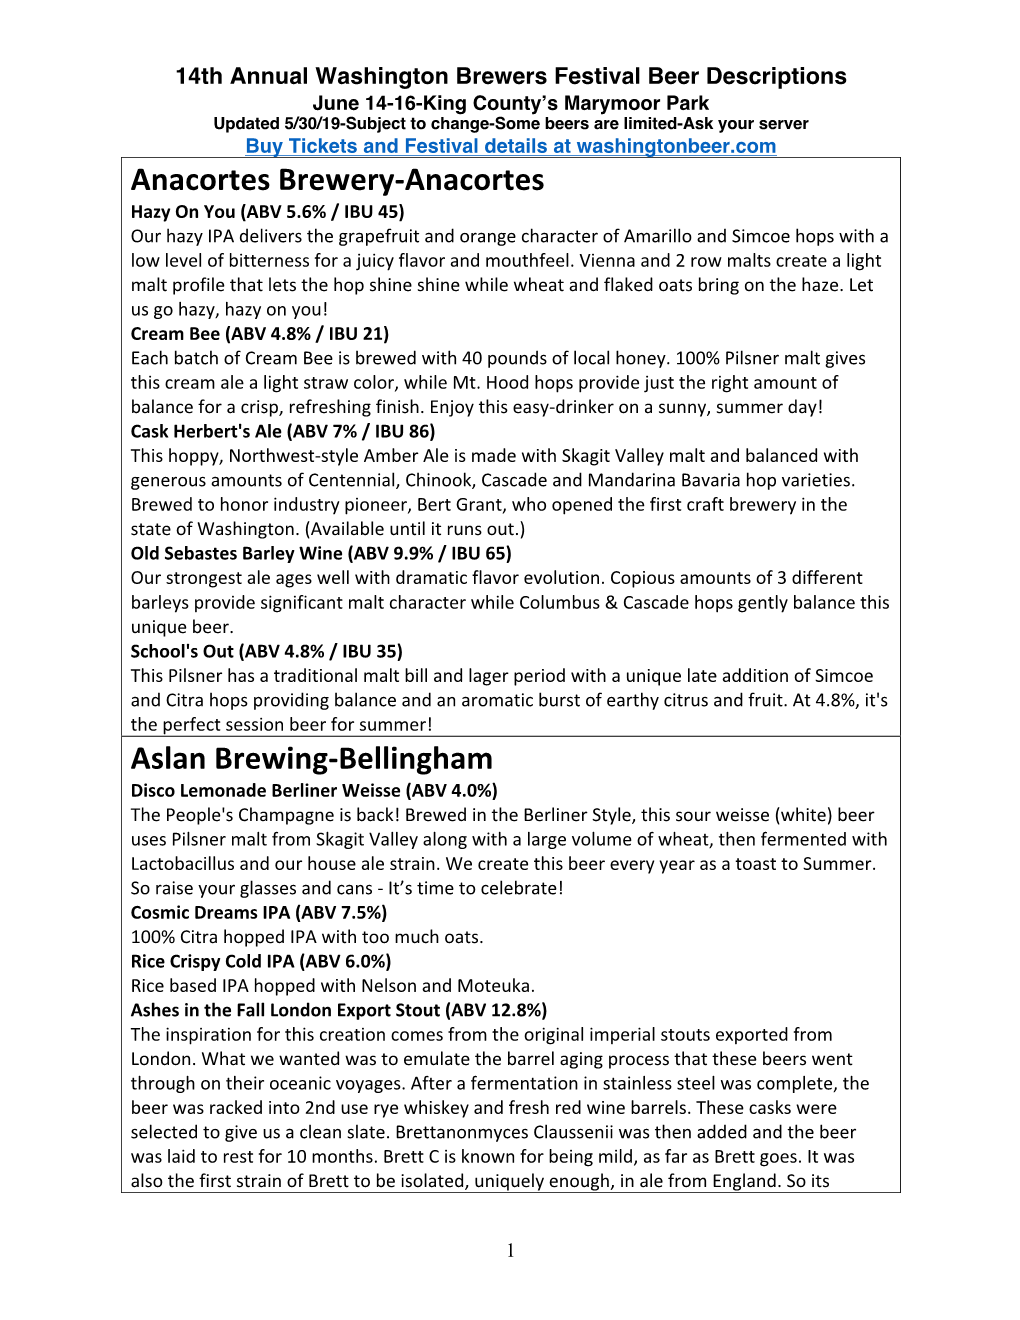 Anacortes Brewery-Anacortes Aslan Brewing-Bellingham